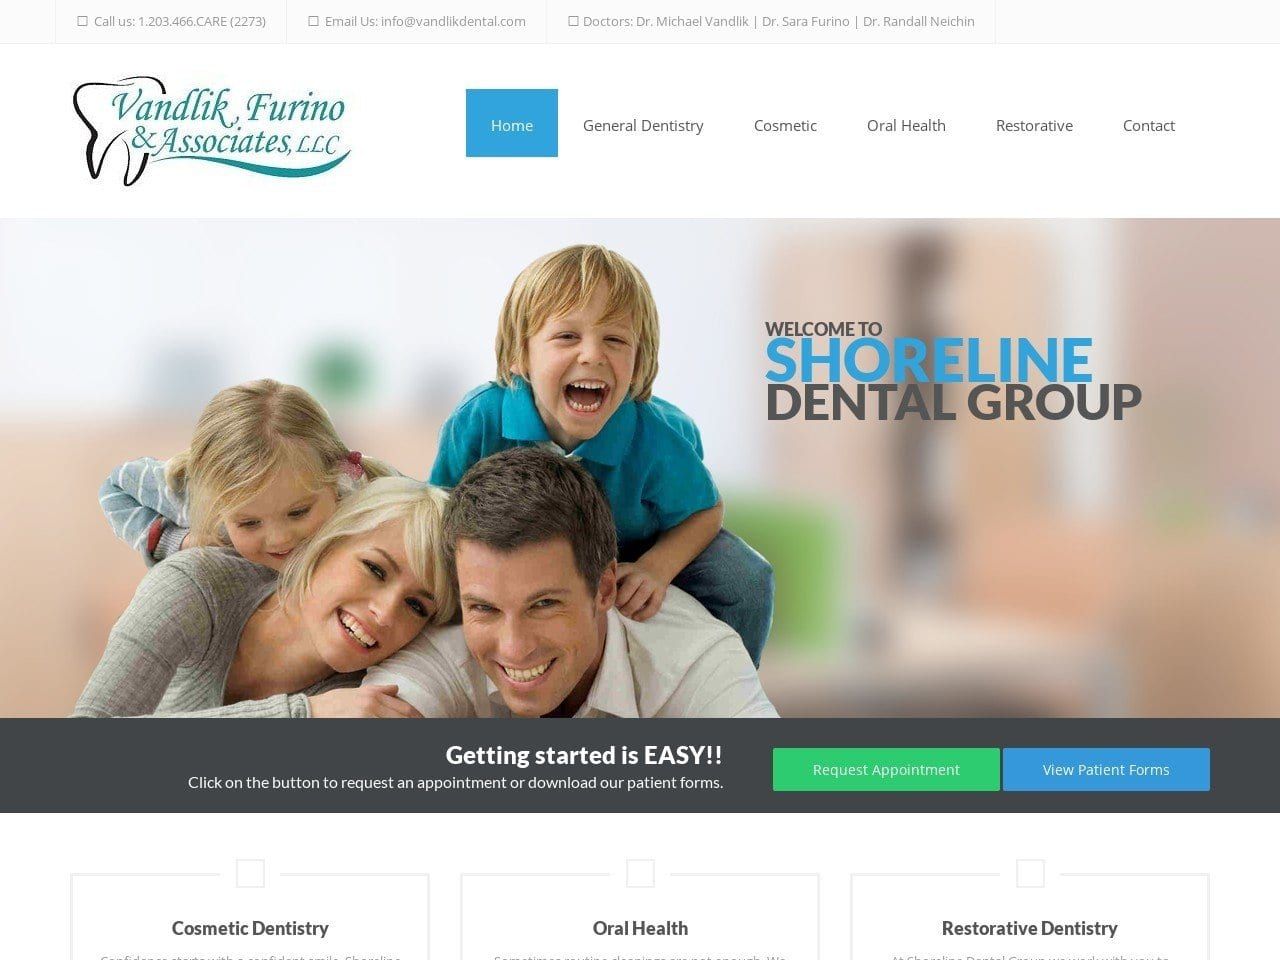 Shoreline Dental Group Website Screenshot from vandlikdental.com